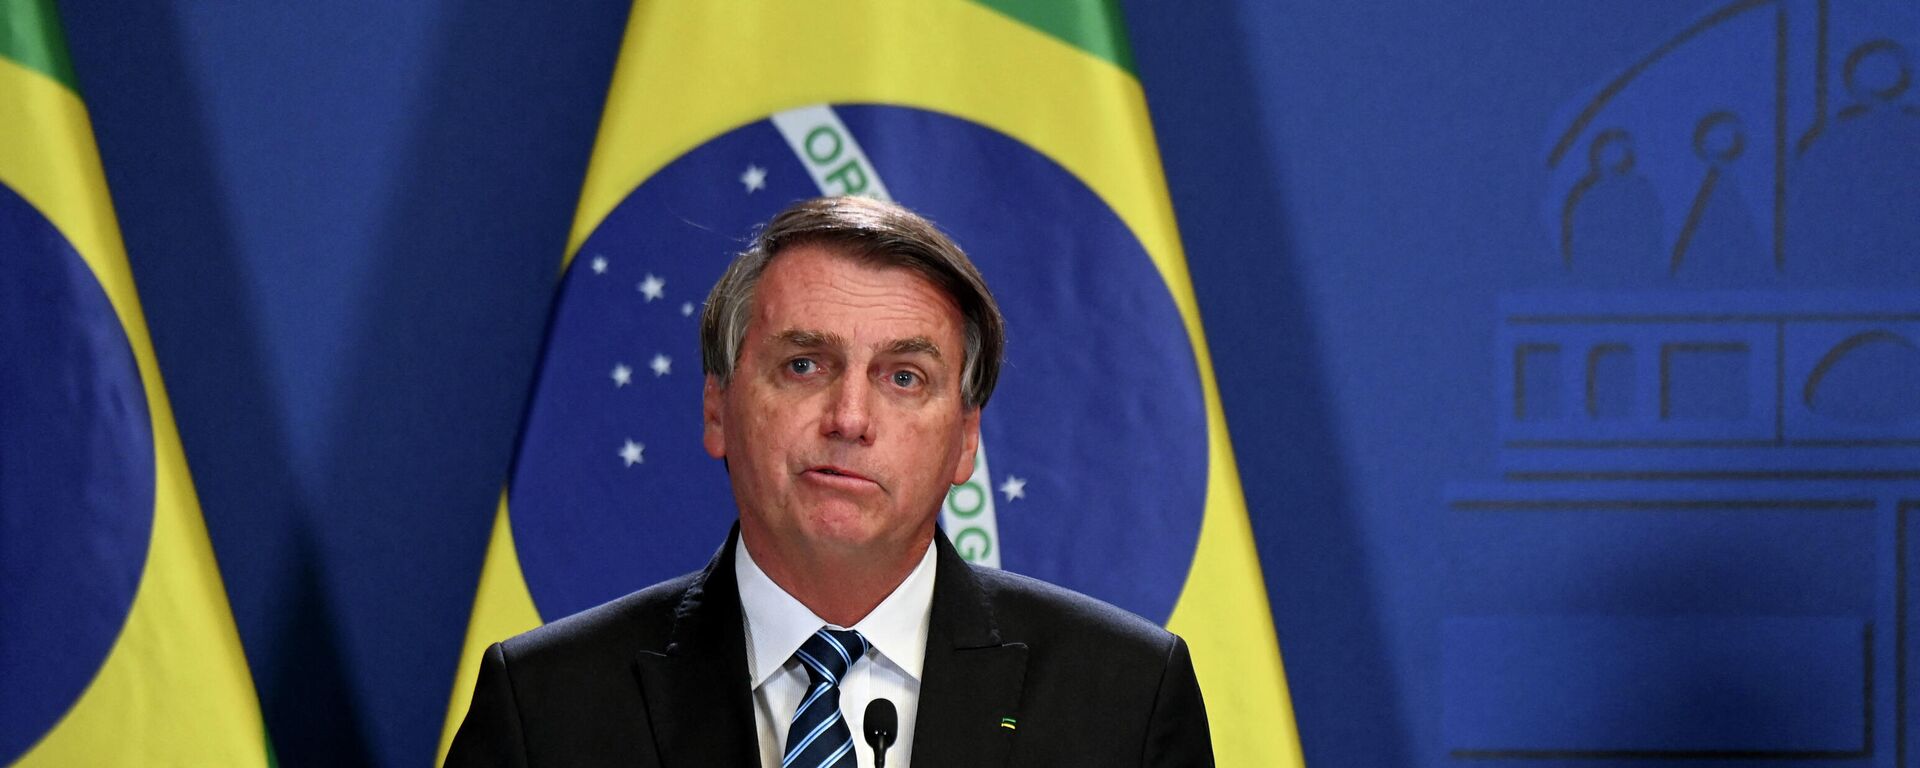 Jair Bolsonaro, el presidente de Brasil - Sputnik Mundo, 1920, 17.02.2022